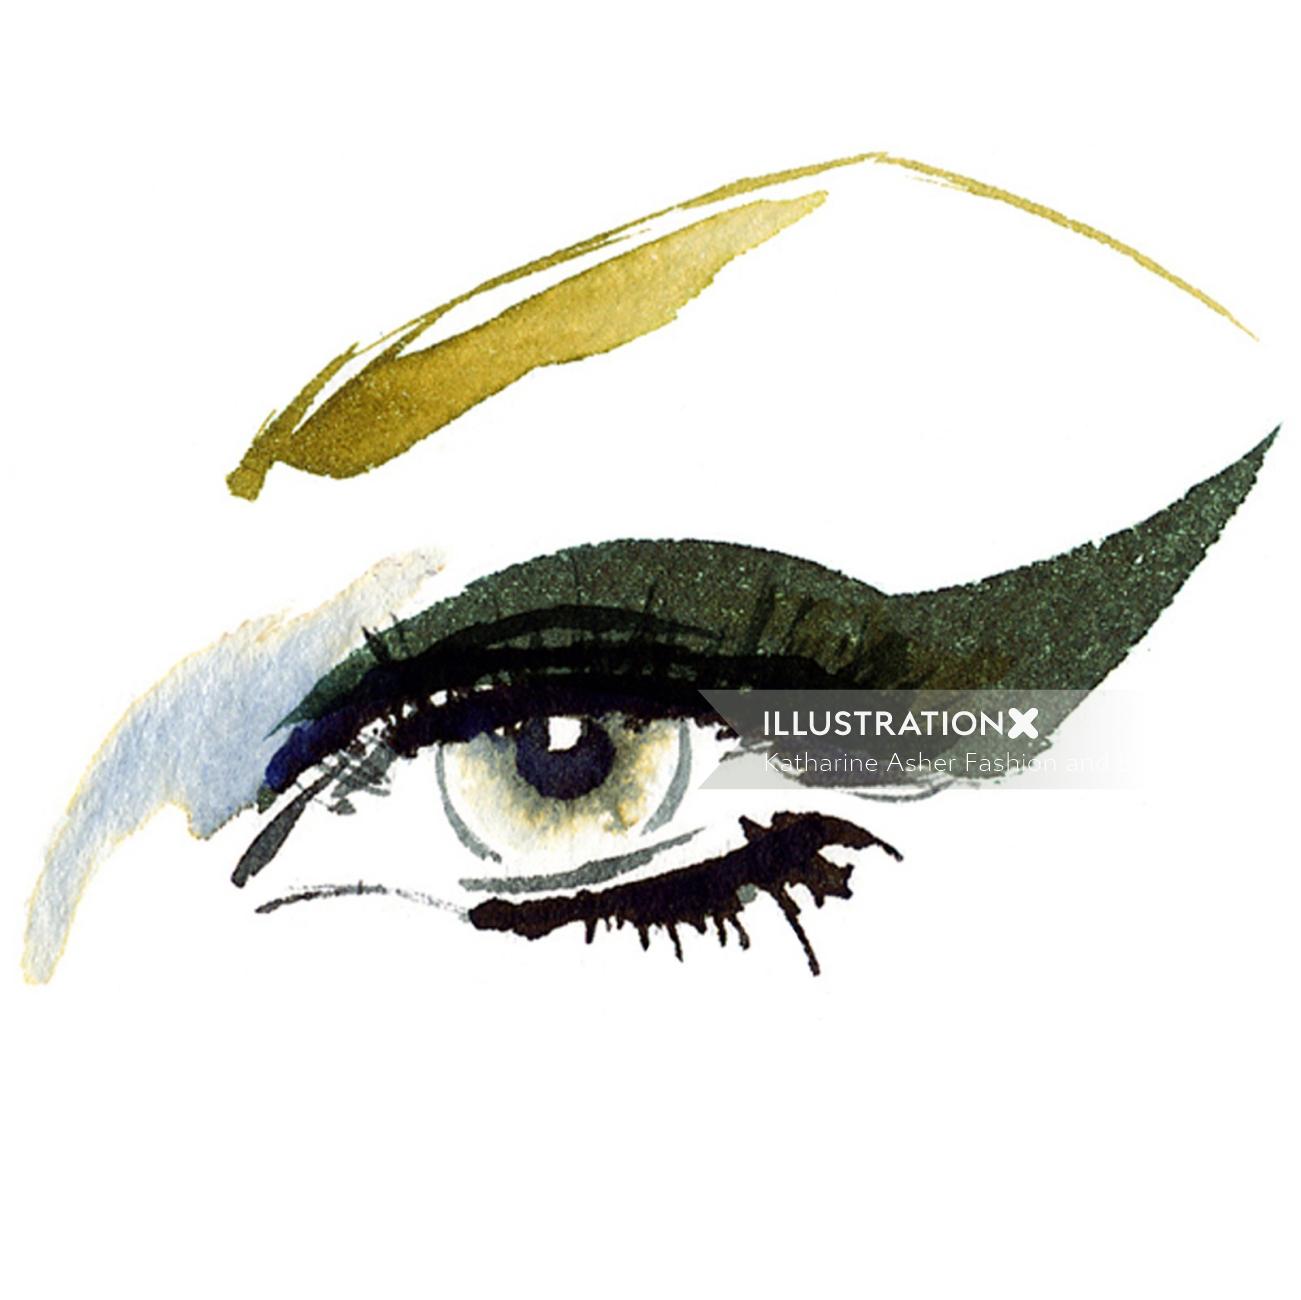 Eye illustration by Katharine Asher